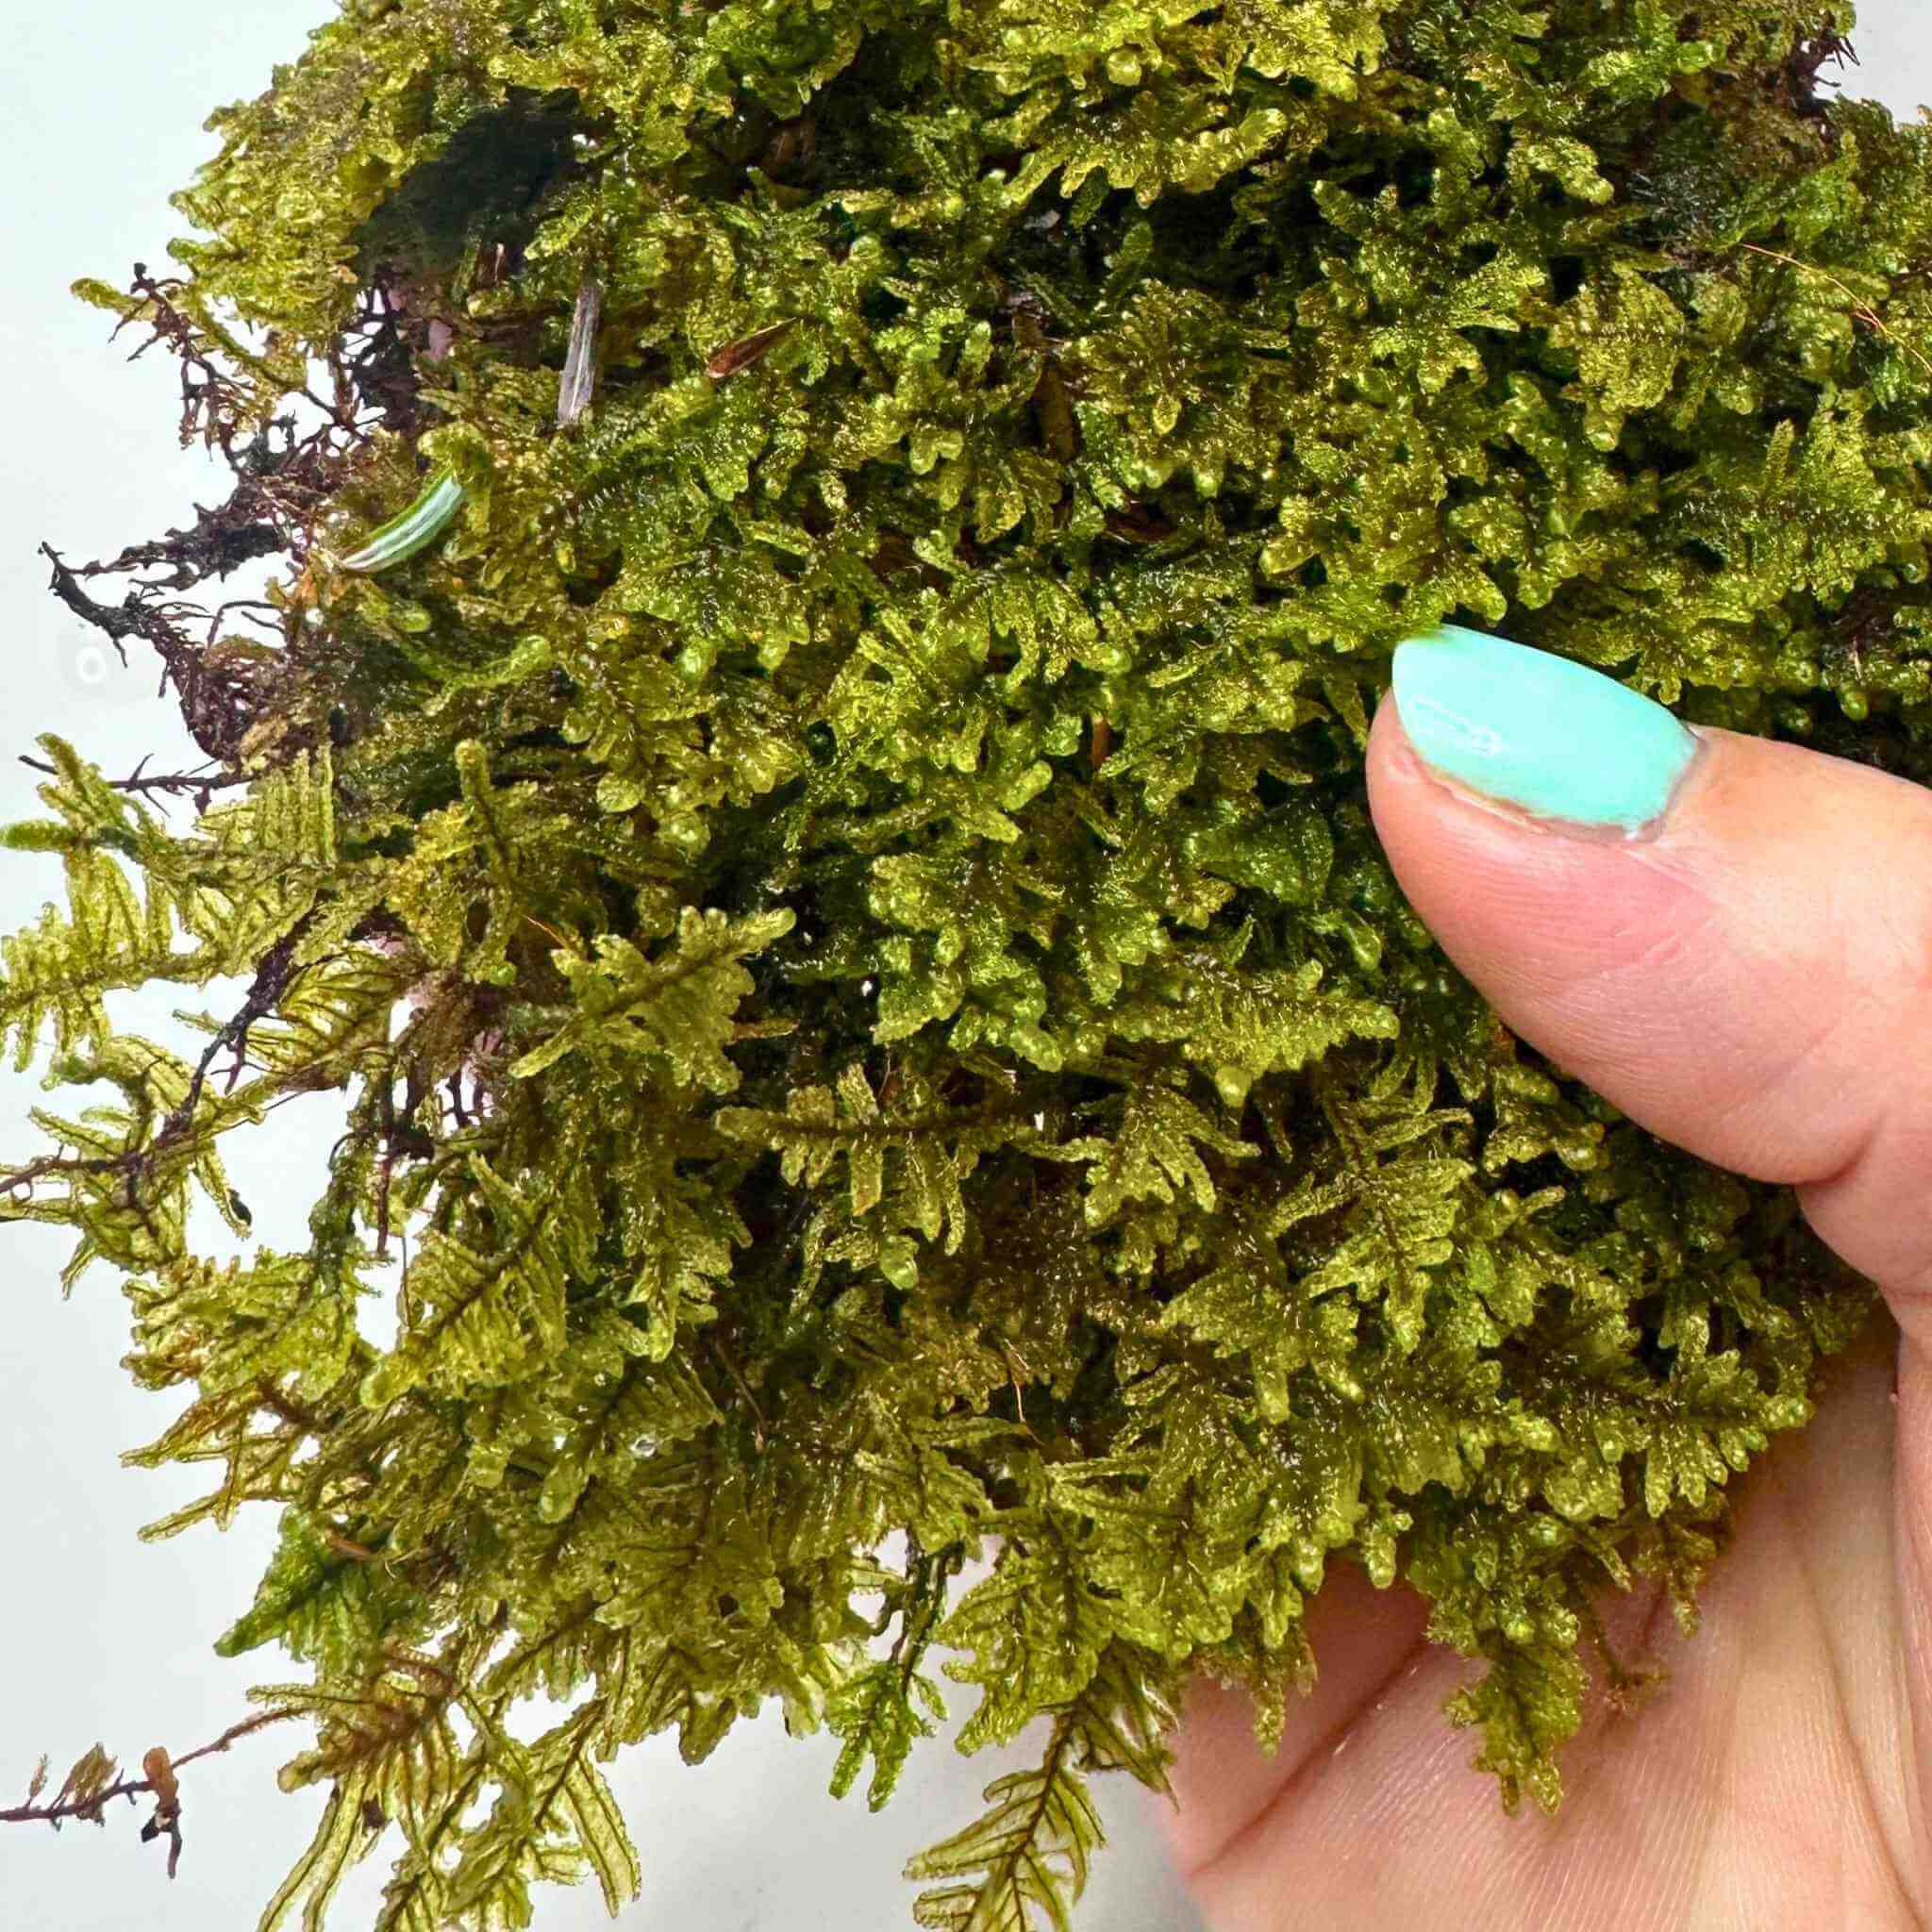 live hypnum sheet moss (hypnum imponens)